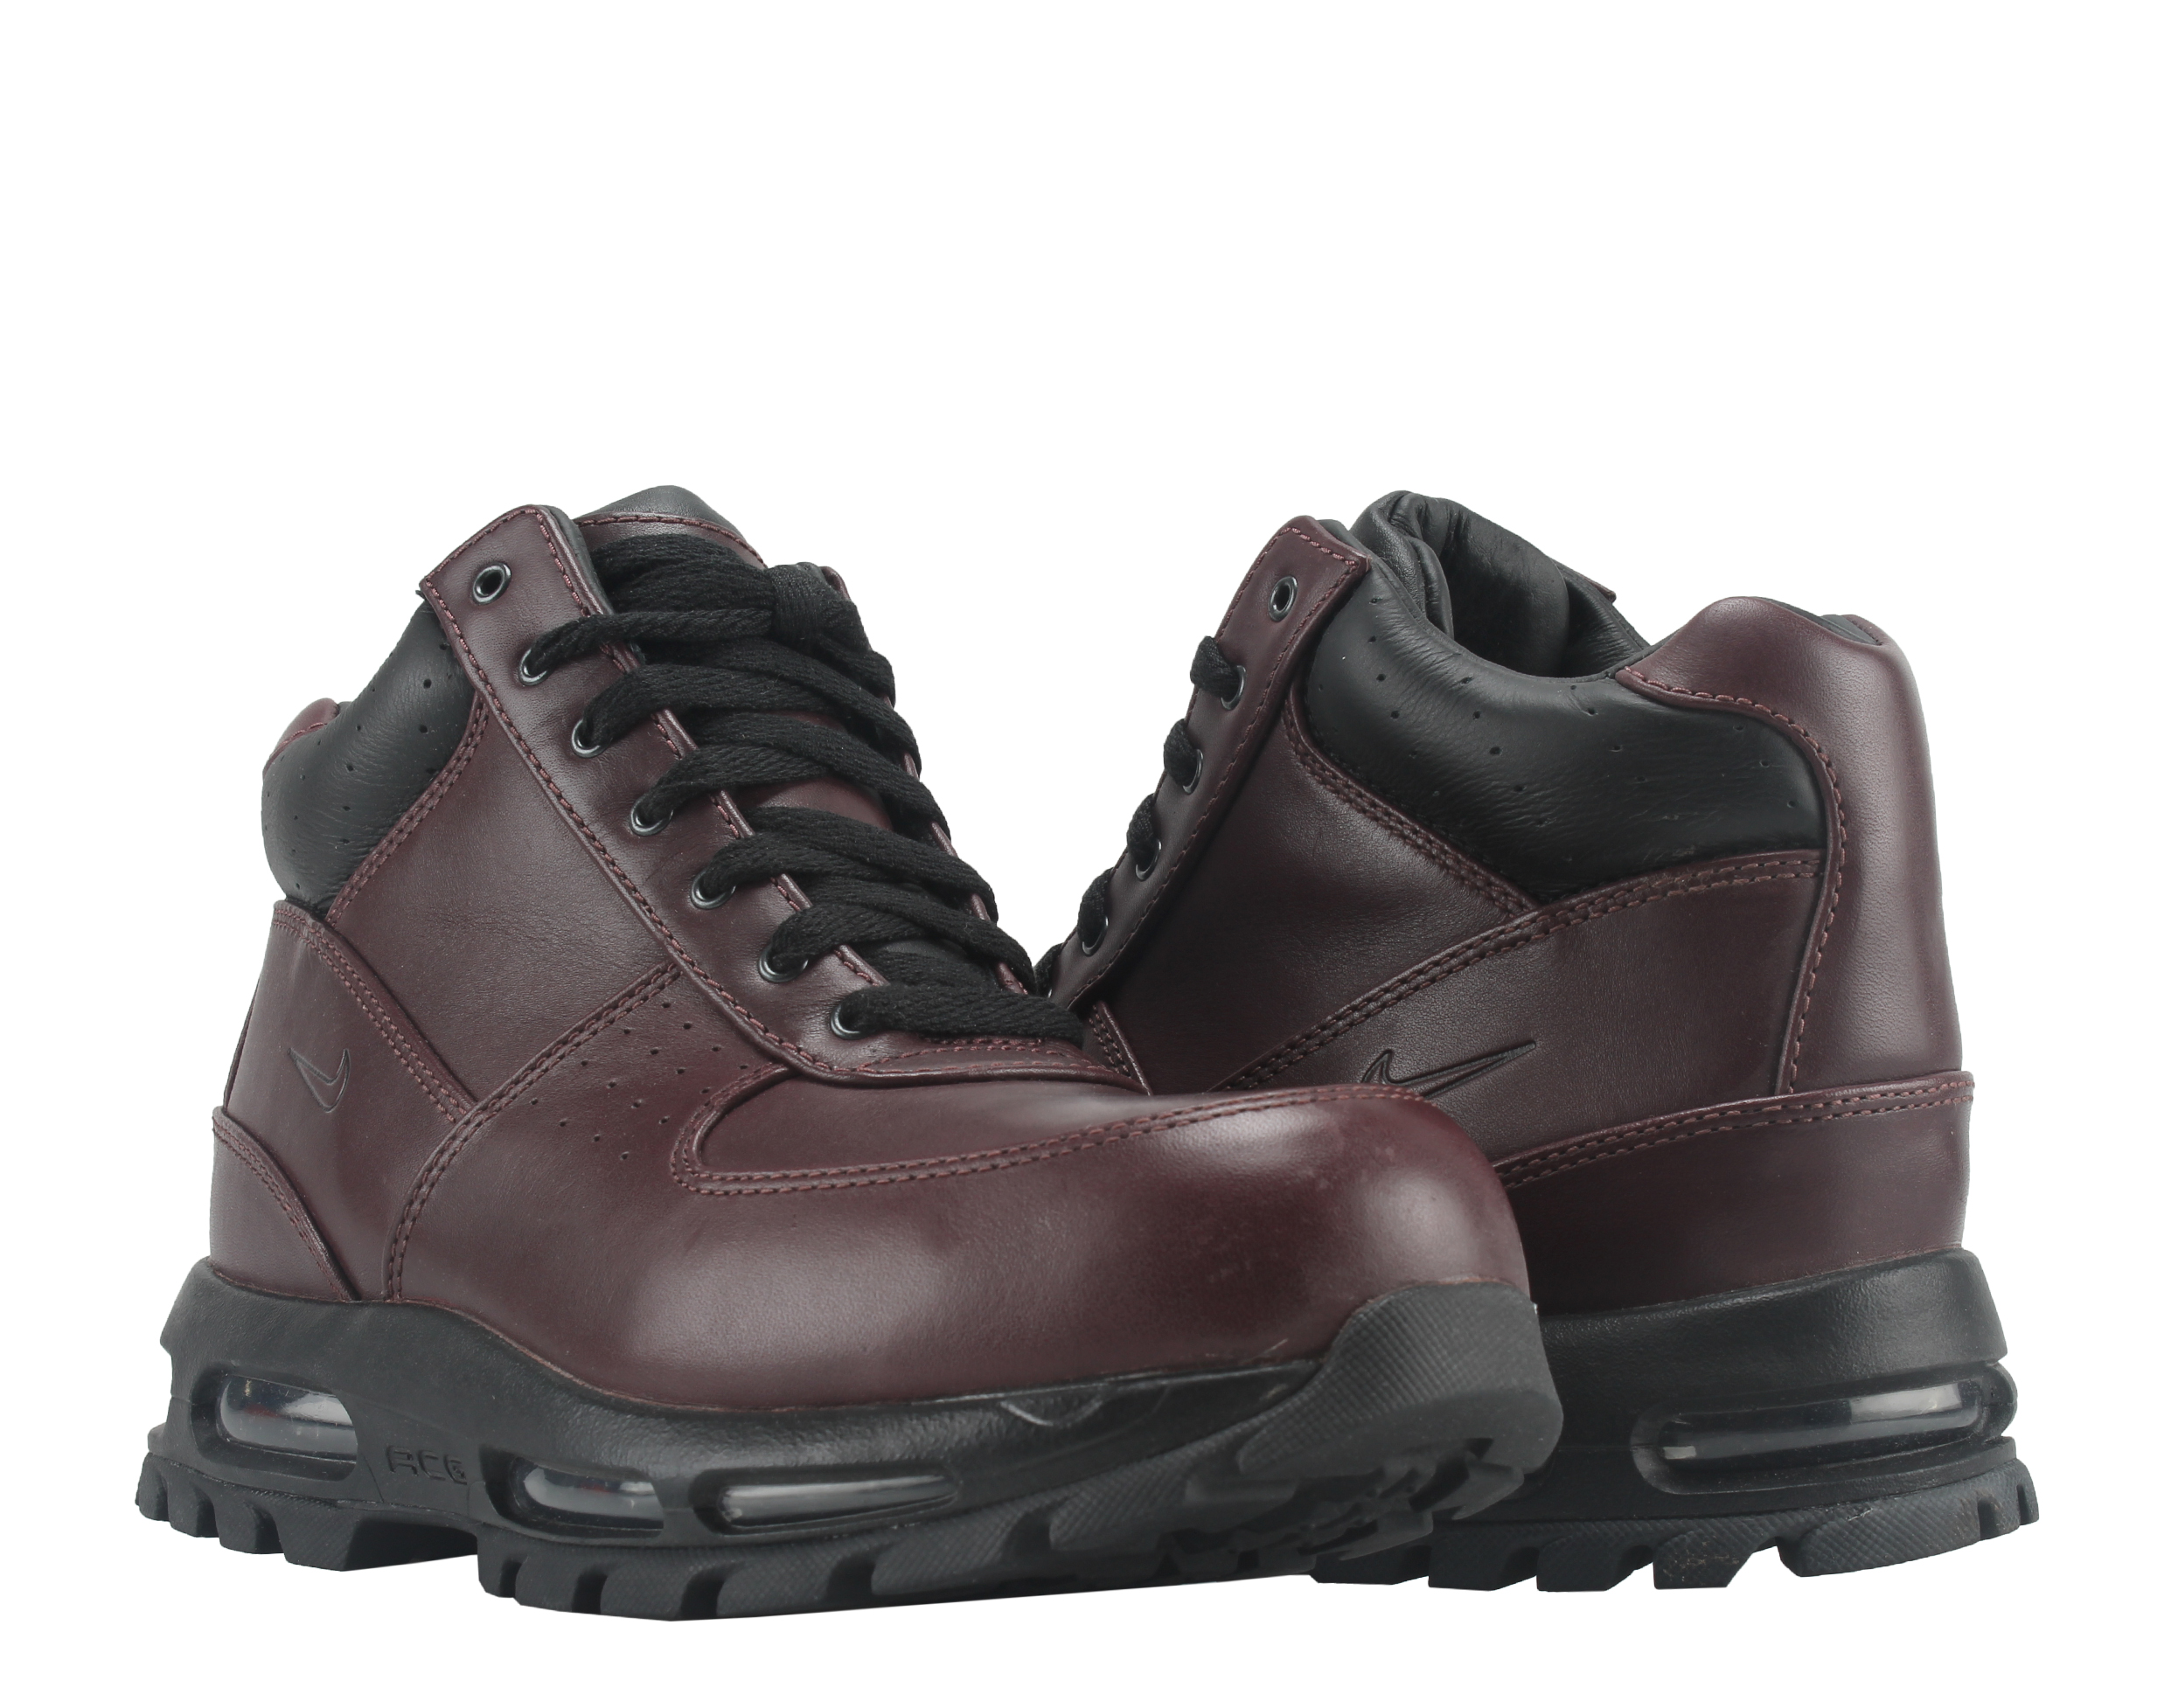 Nike Air Max Goadome ACG Deep Burgundy/Black Men's Boots 865031-601